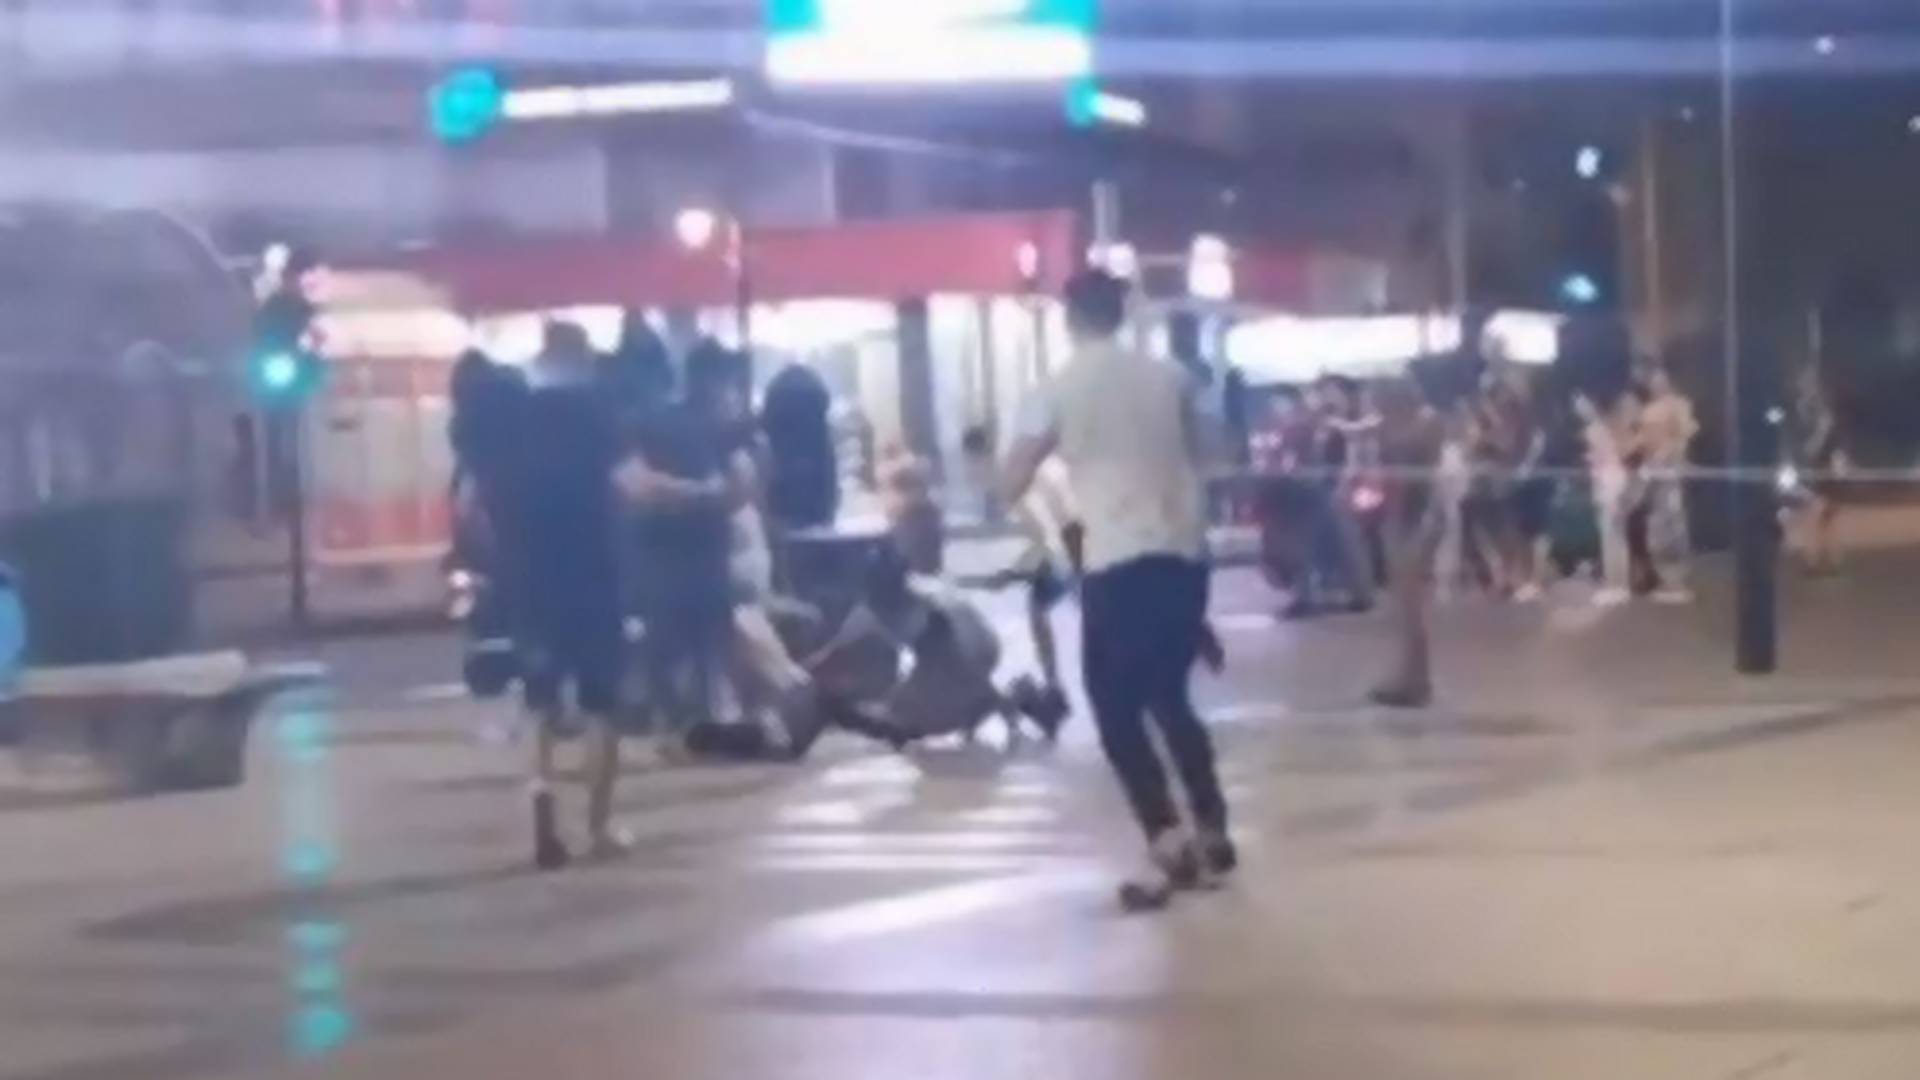 Svi dele snimak tuče u Nišu - Grupa momaka bije jednog mladića, a dok devojke zapomažu prolaznici snimaju incident